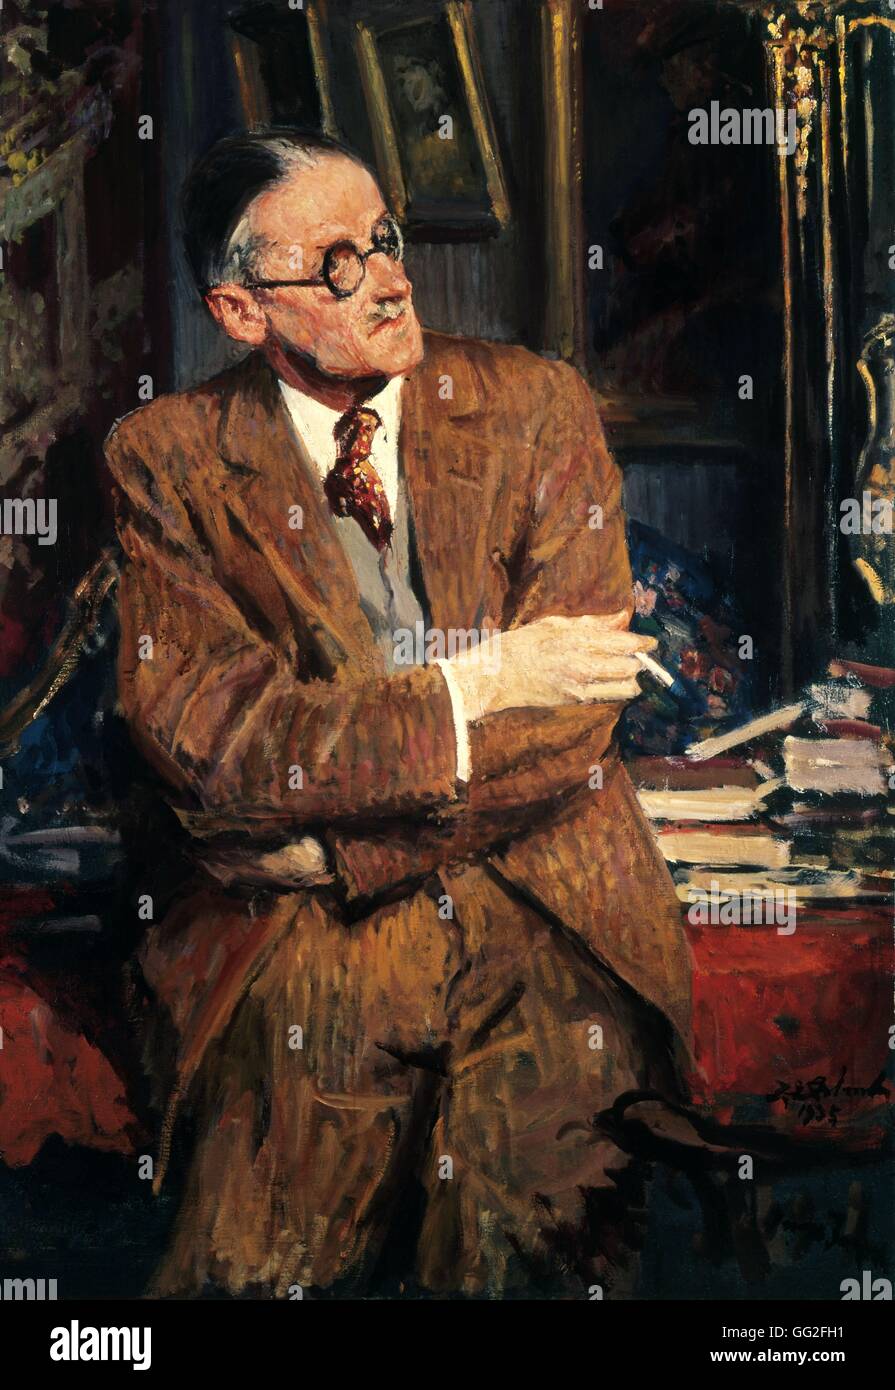 Jacques Émile Blanche (1861-1942) Ecole d ' Art Française Portrait von James Joyce 1935 Öl auf Leinwand (125 cm x 87,6 cm) London, National Portrait Gallery Stockfoto